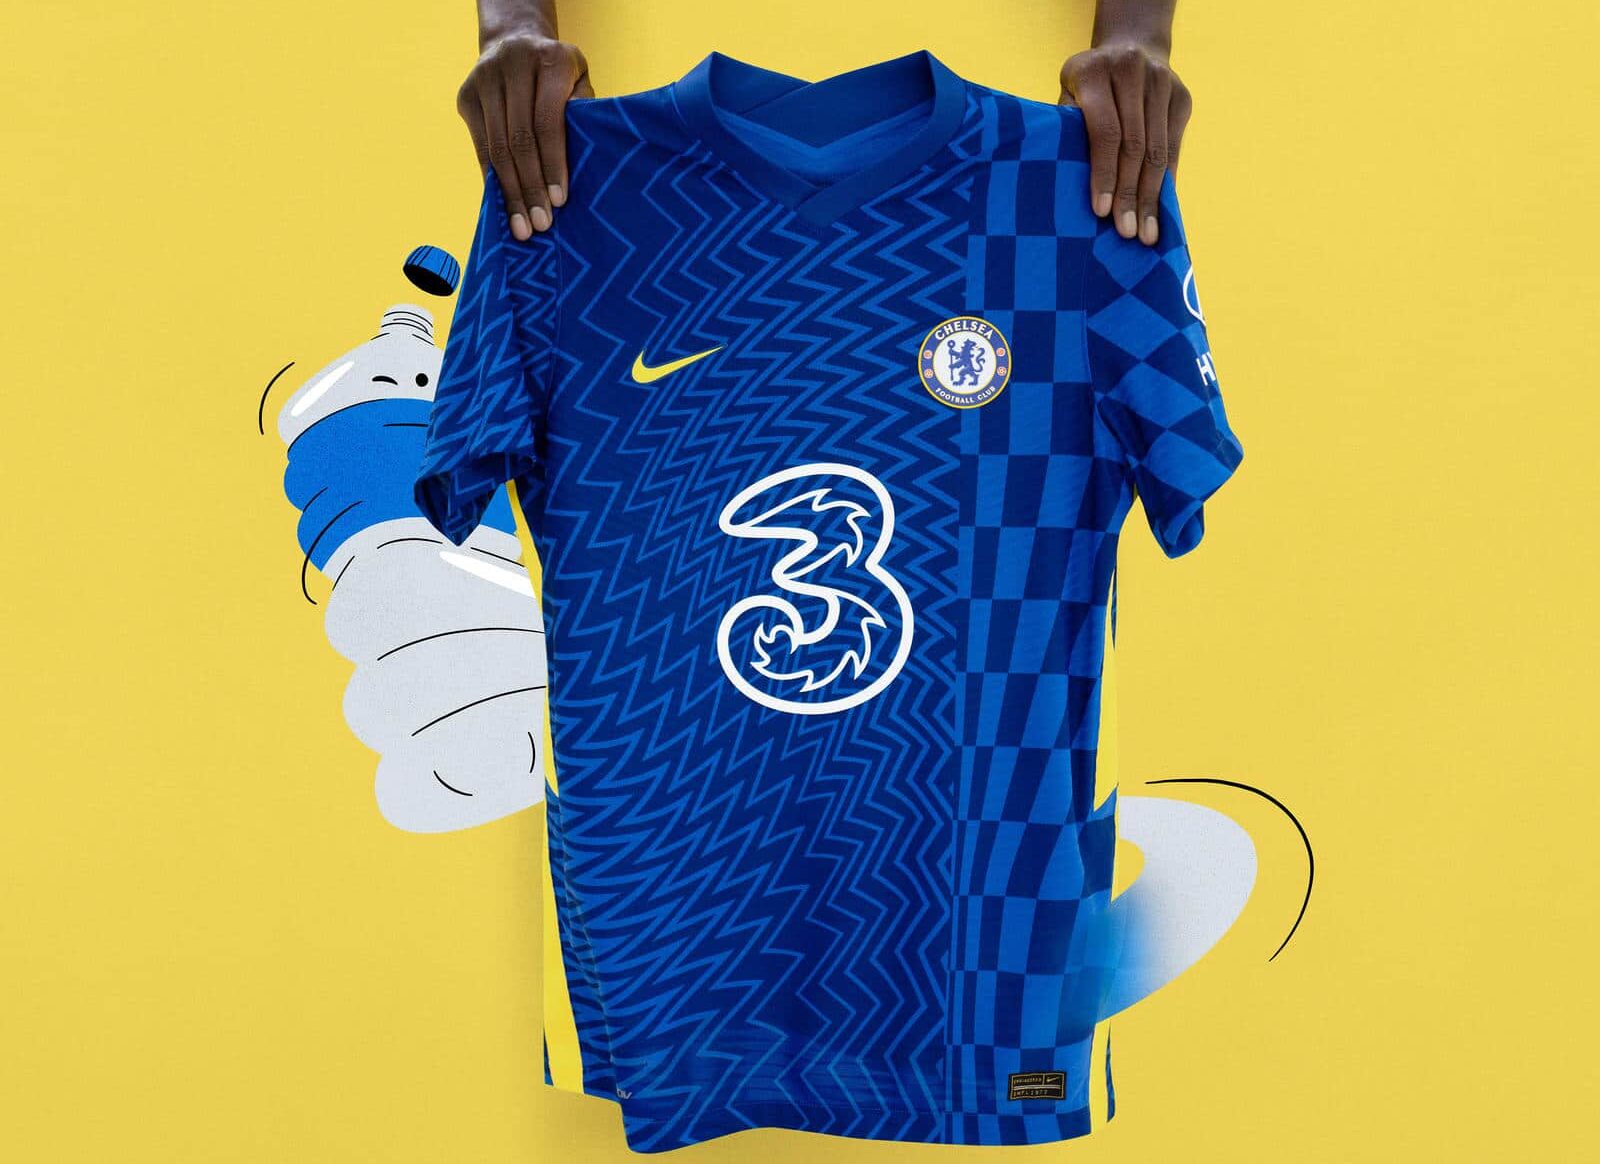 Chelsea’s new 2021-22 home kit